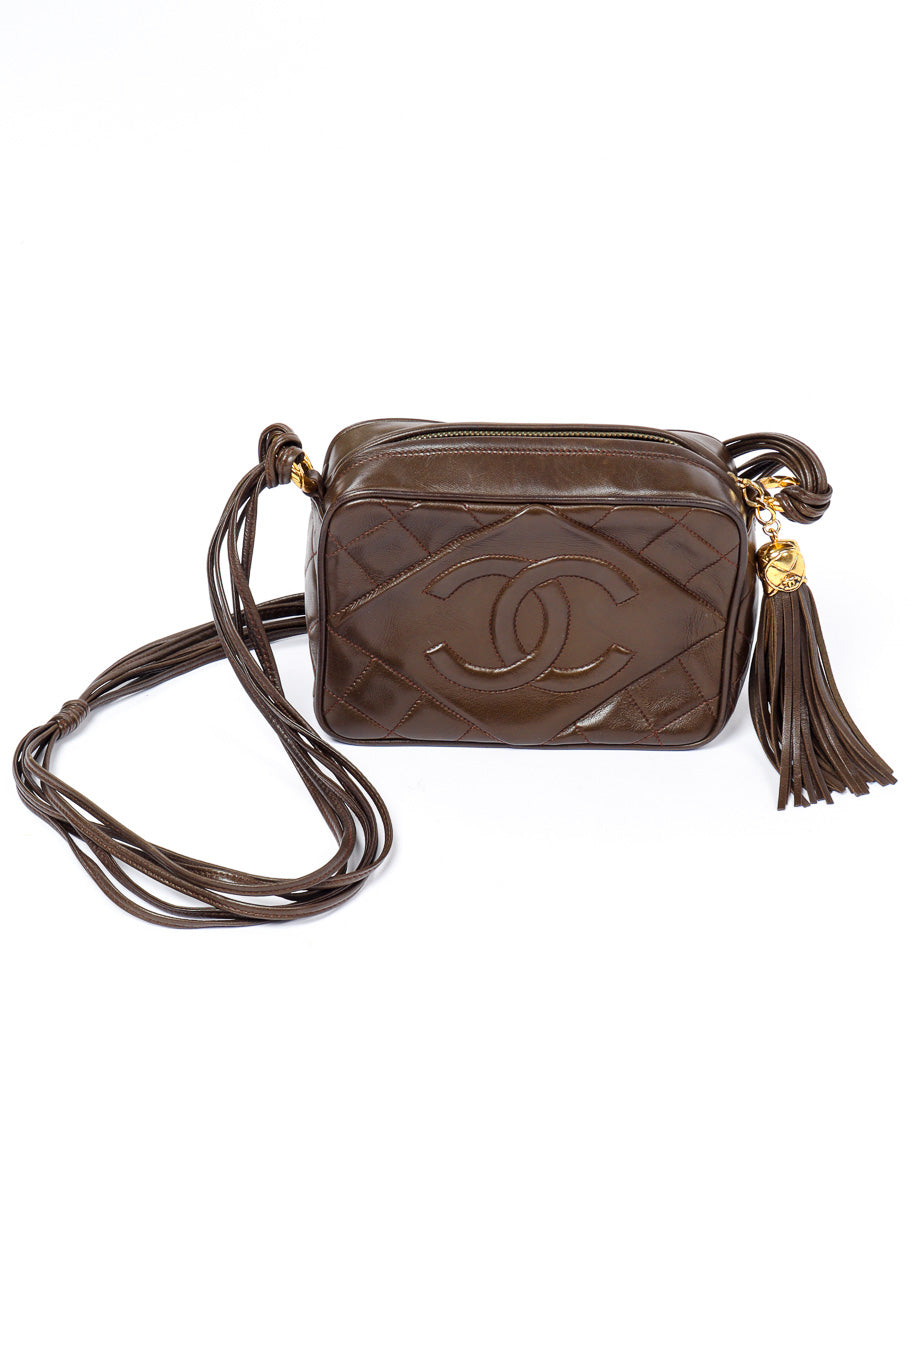 Chanel Vintage Tassel Camera Bag